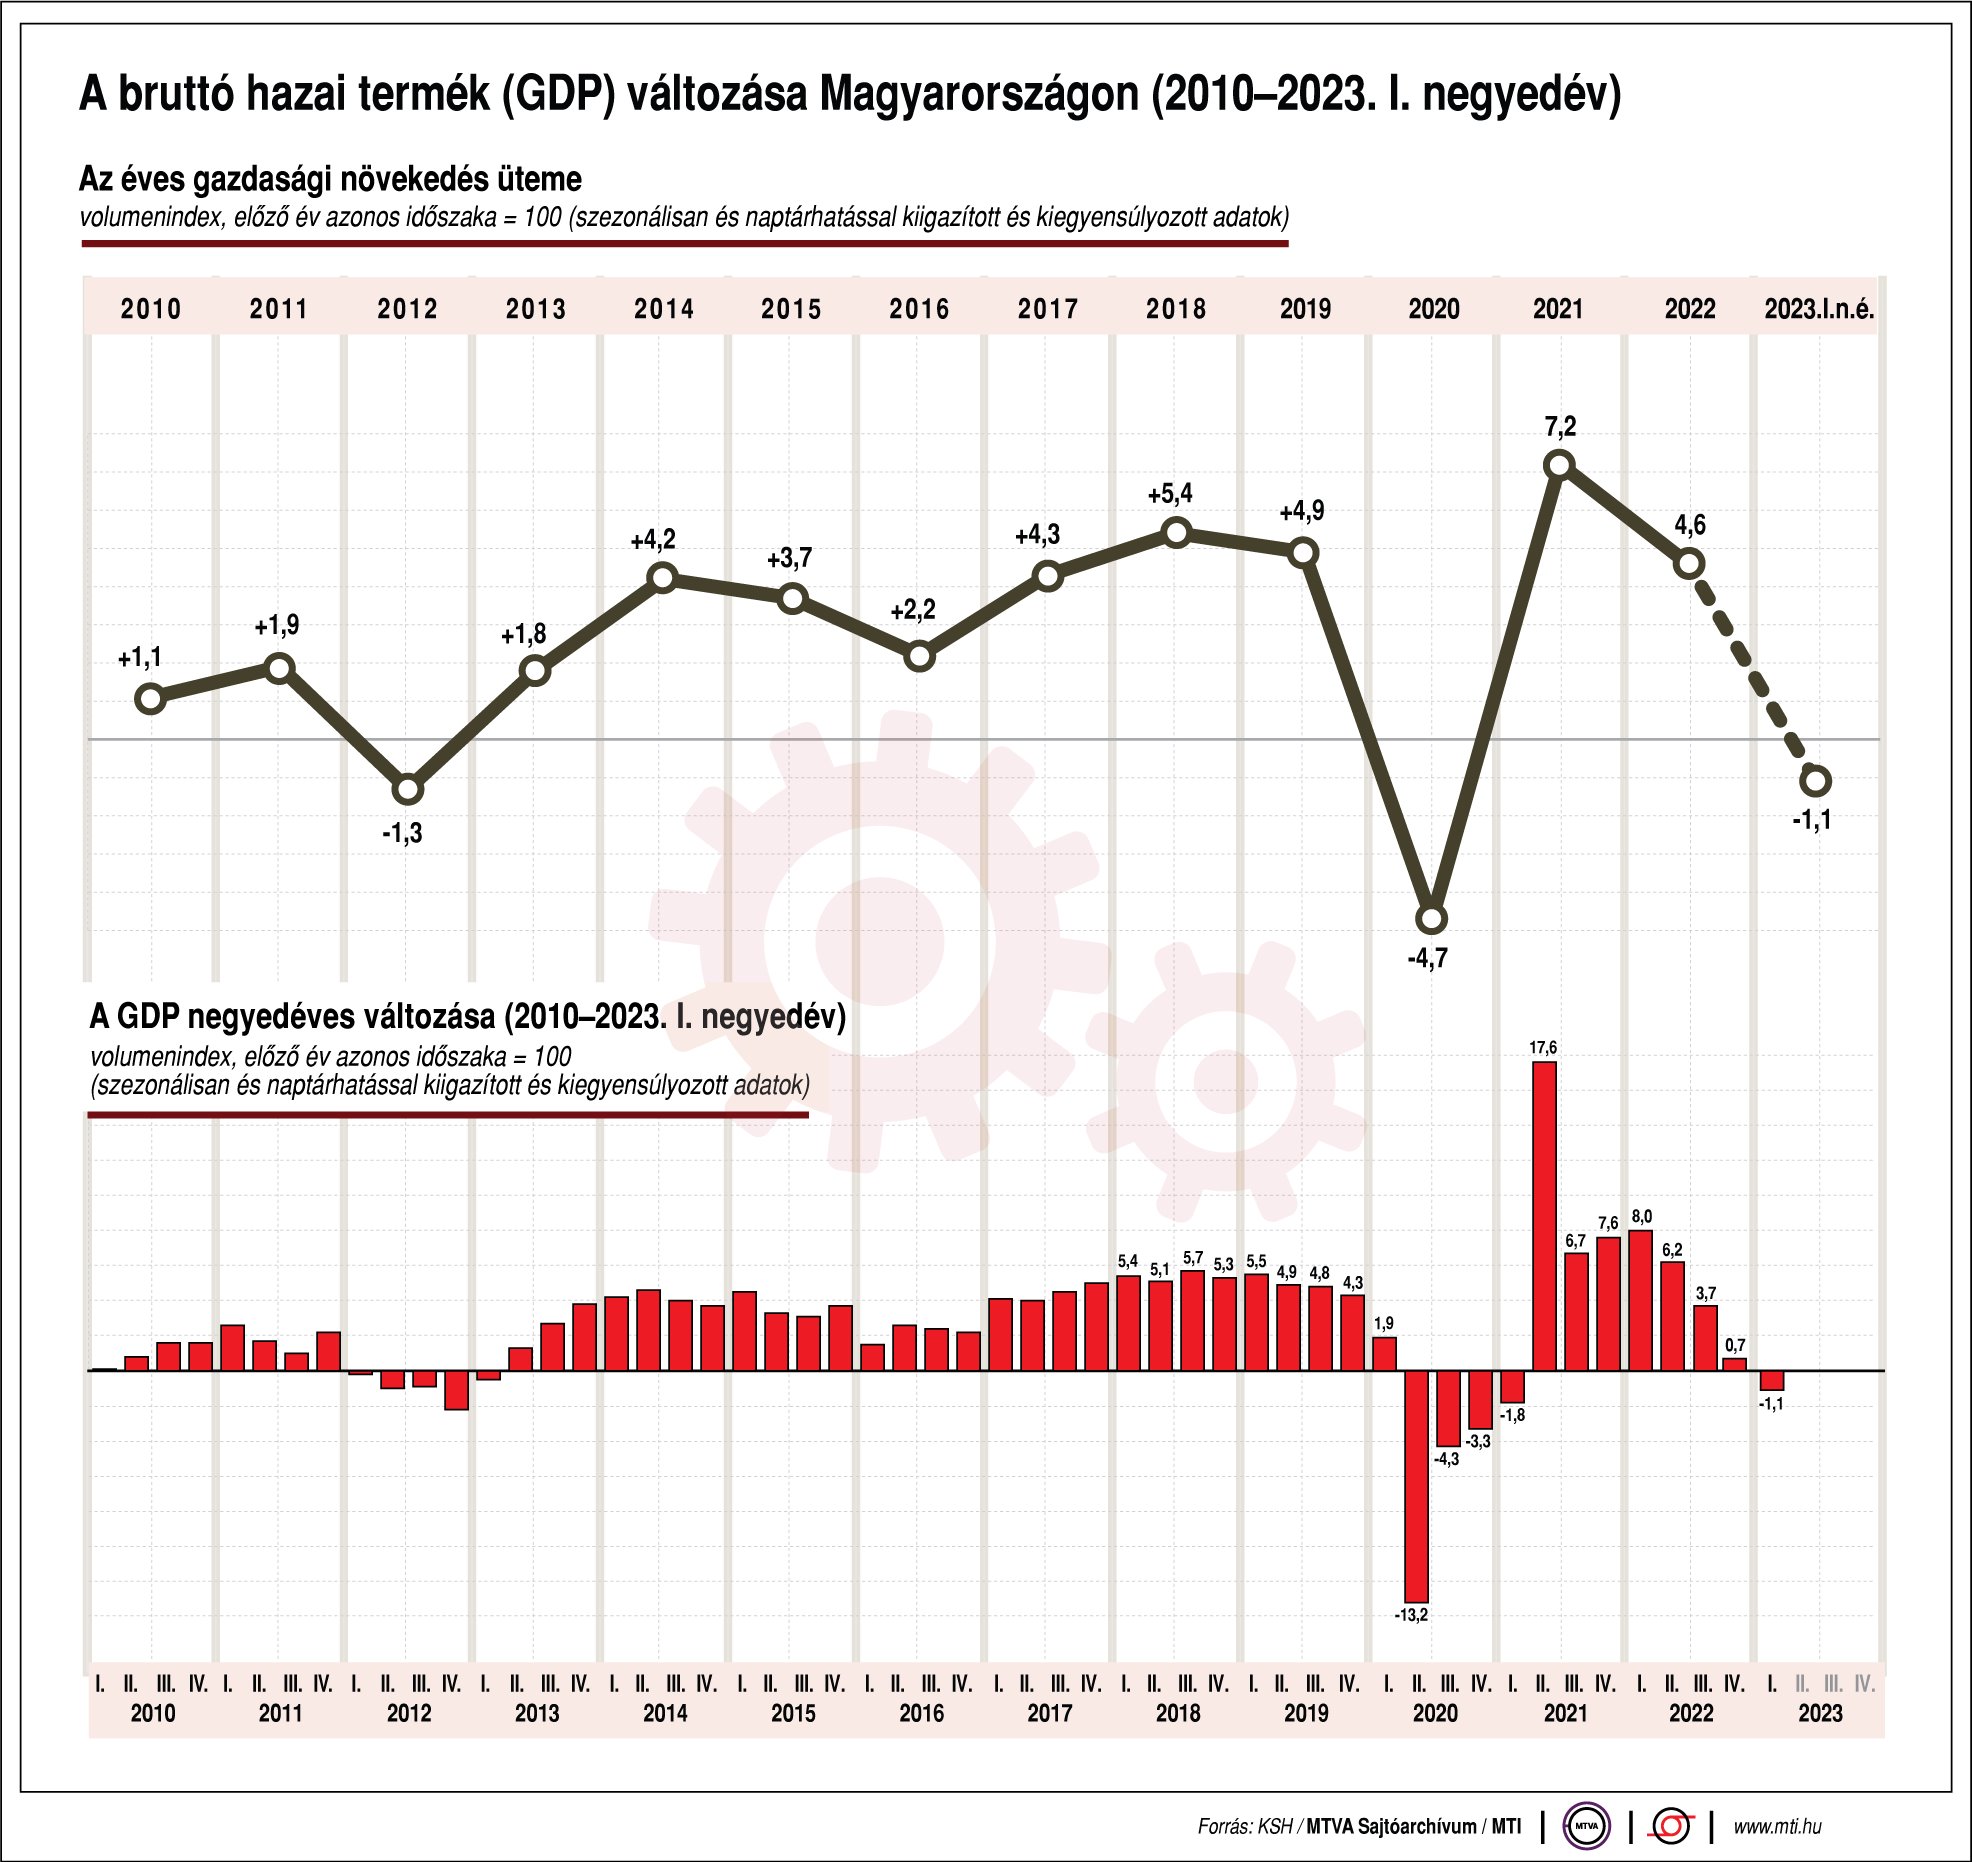 A bruttó hazai termék változása Magyarországon (2010-2023. I. negyedév)